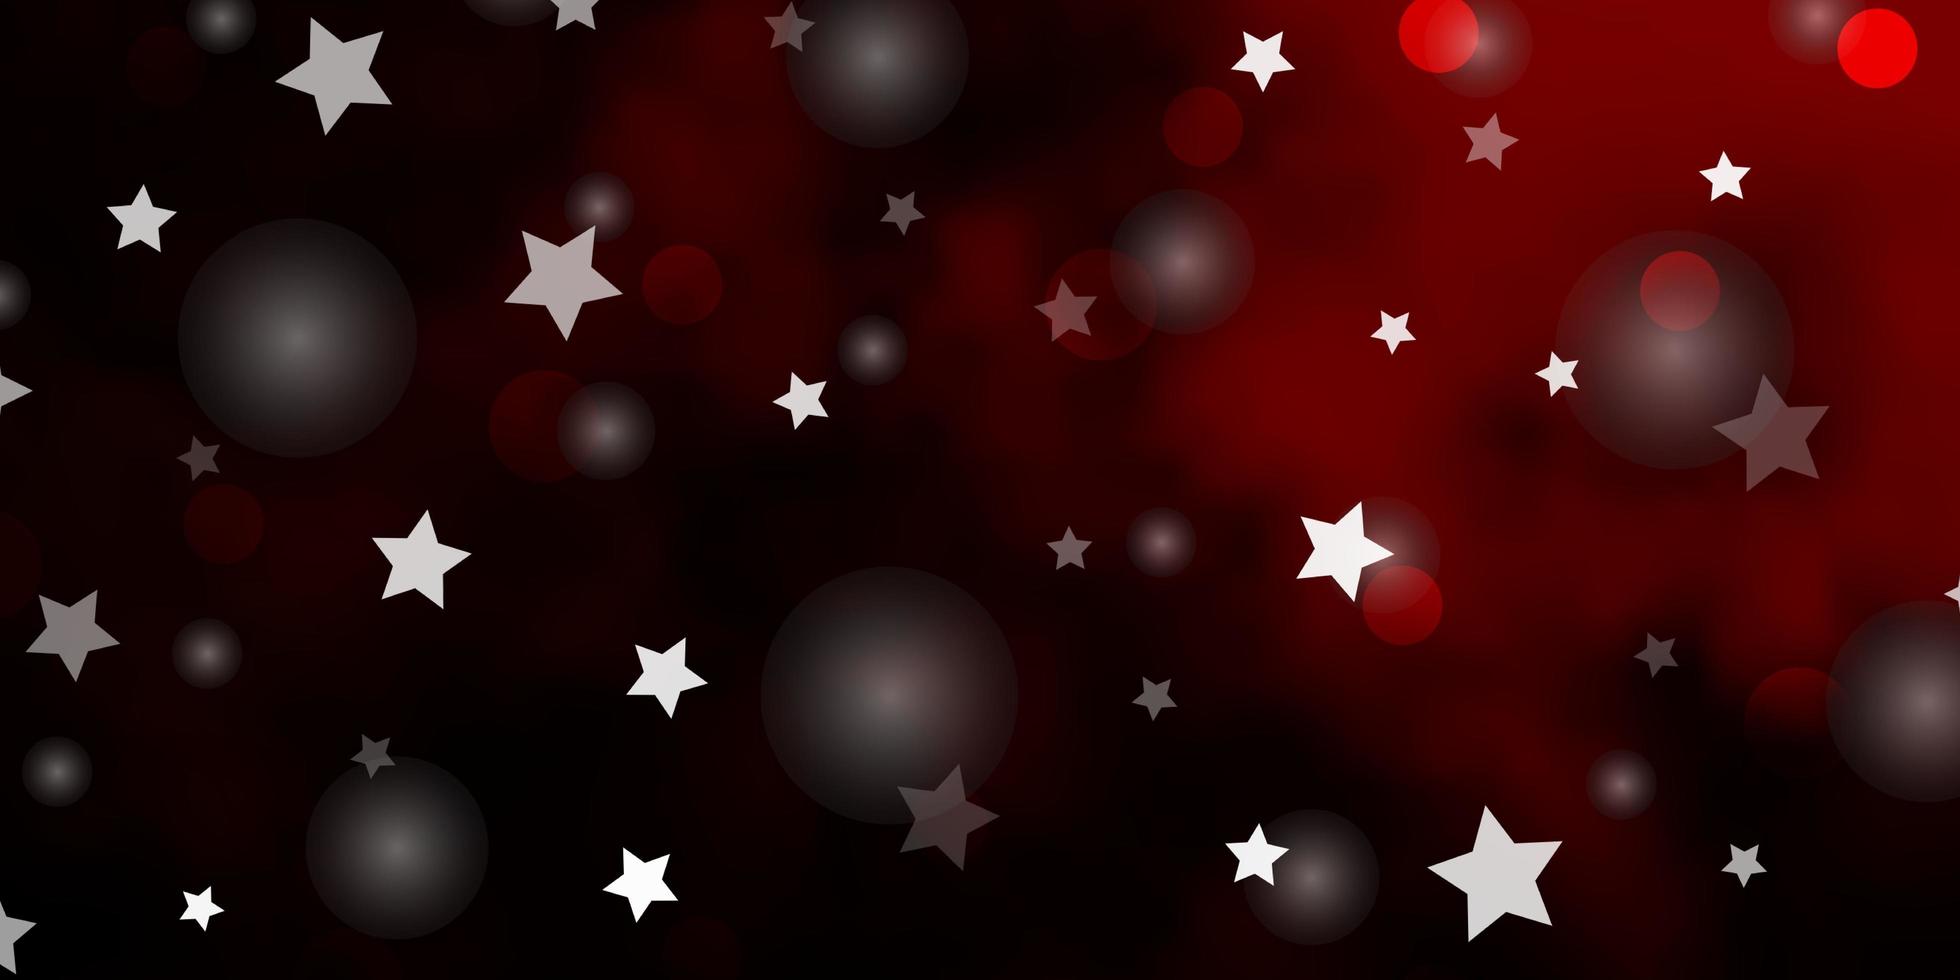 modèle vectoriel rouge foncé avec des cercles, des étoiles. illustration abstraite avec des formes colorées de cercles, étoiles. conception pour textile, tissu, papiers peints.